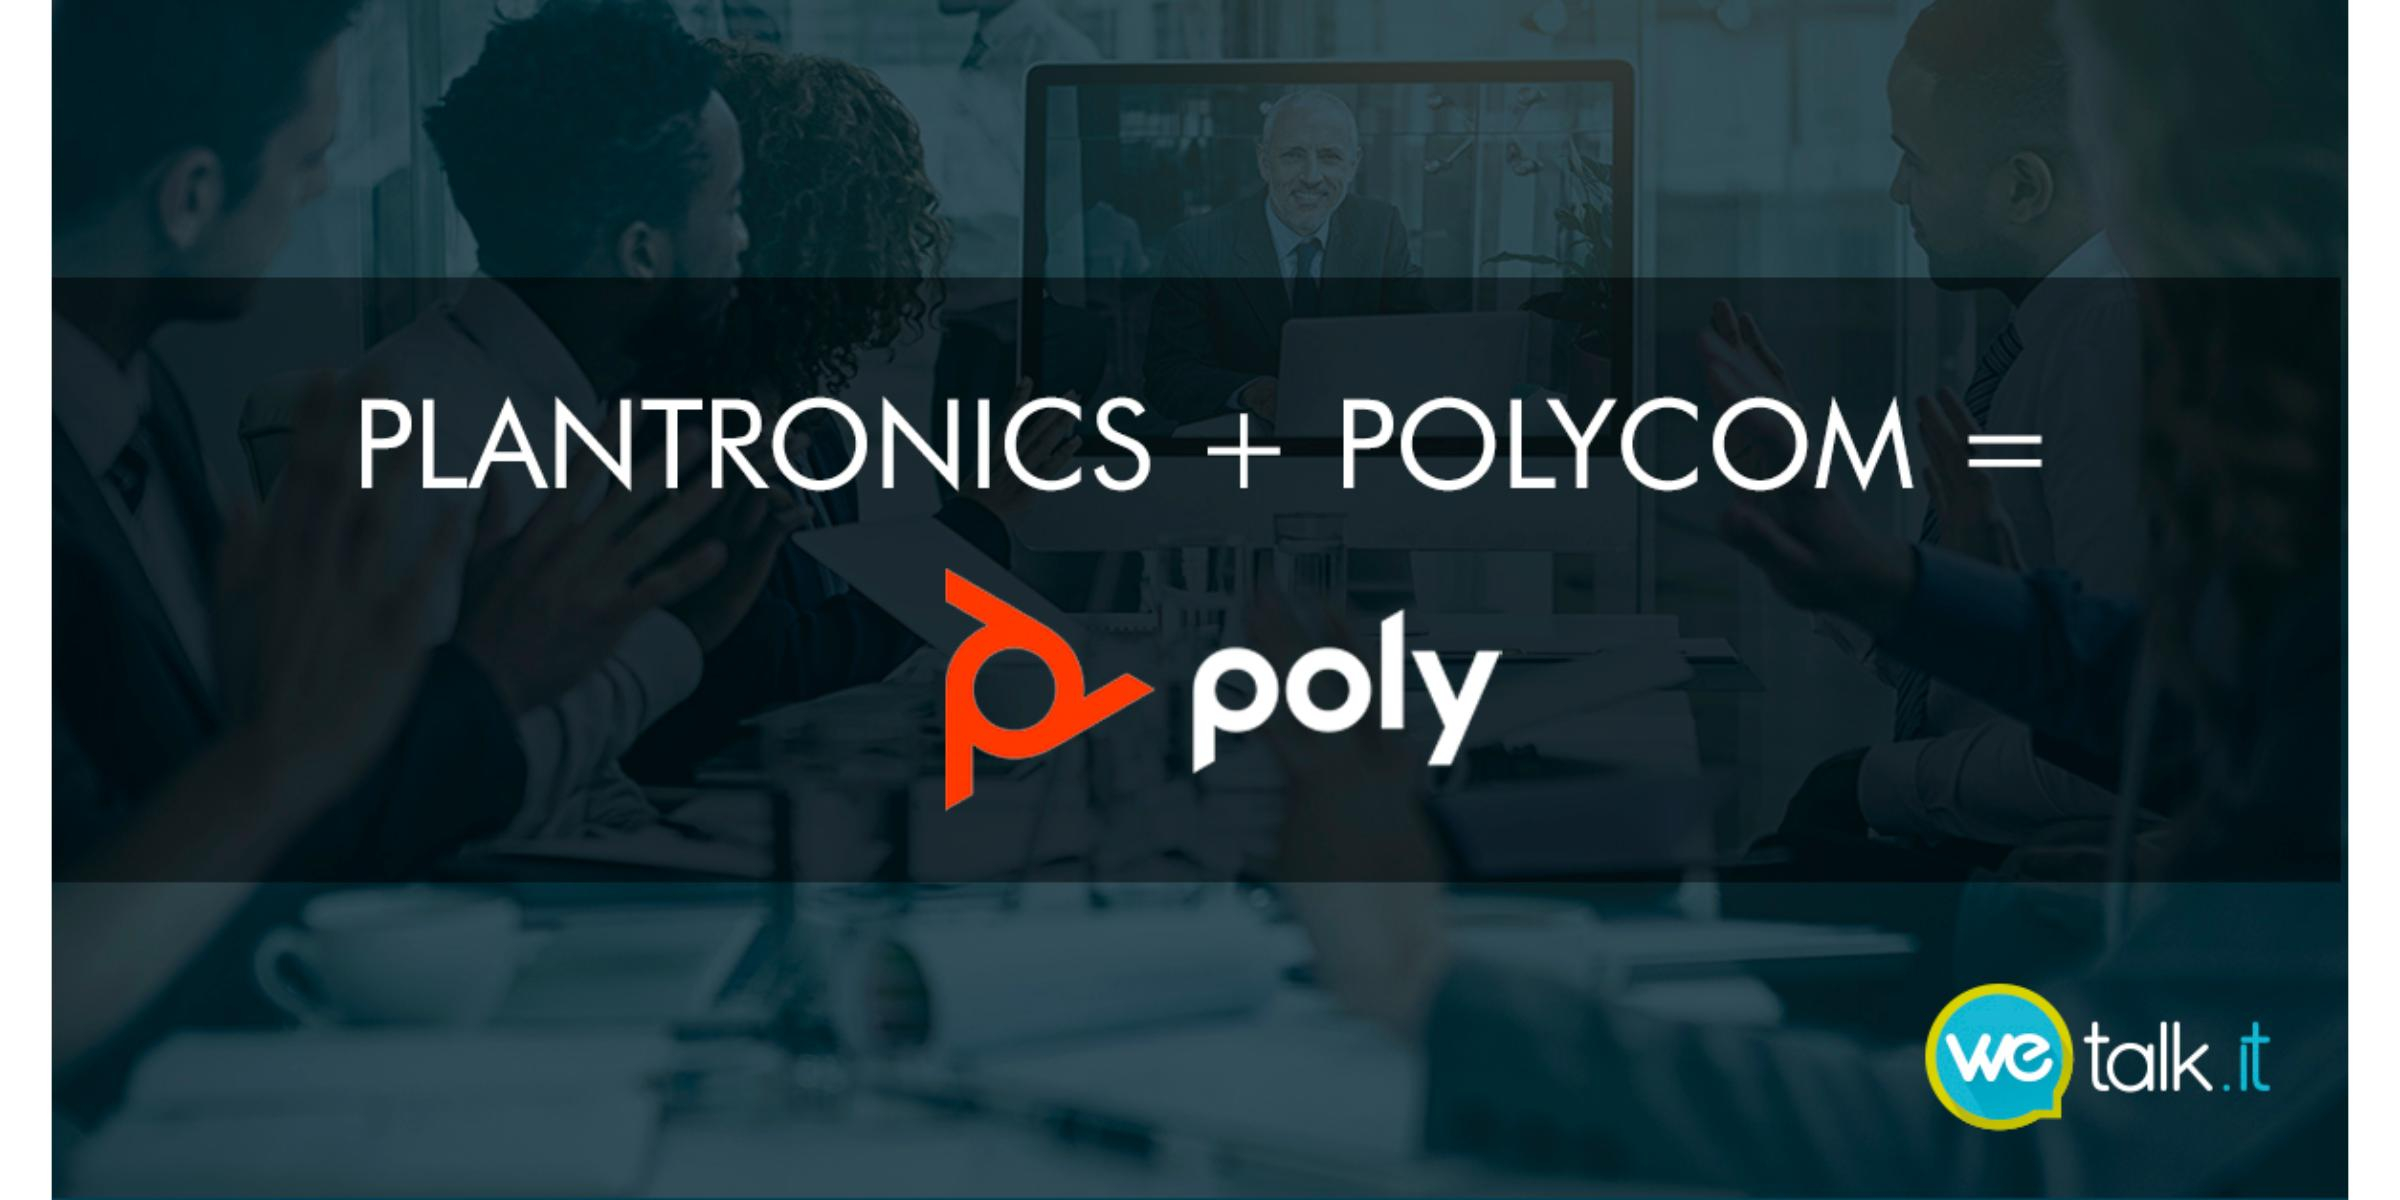 União entre Polycom e Plantronics - Conheça a Poly